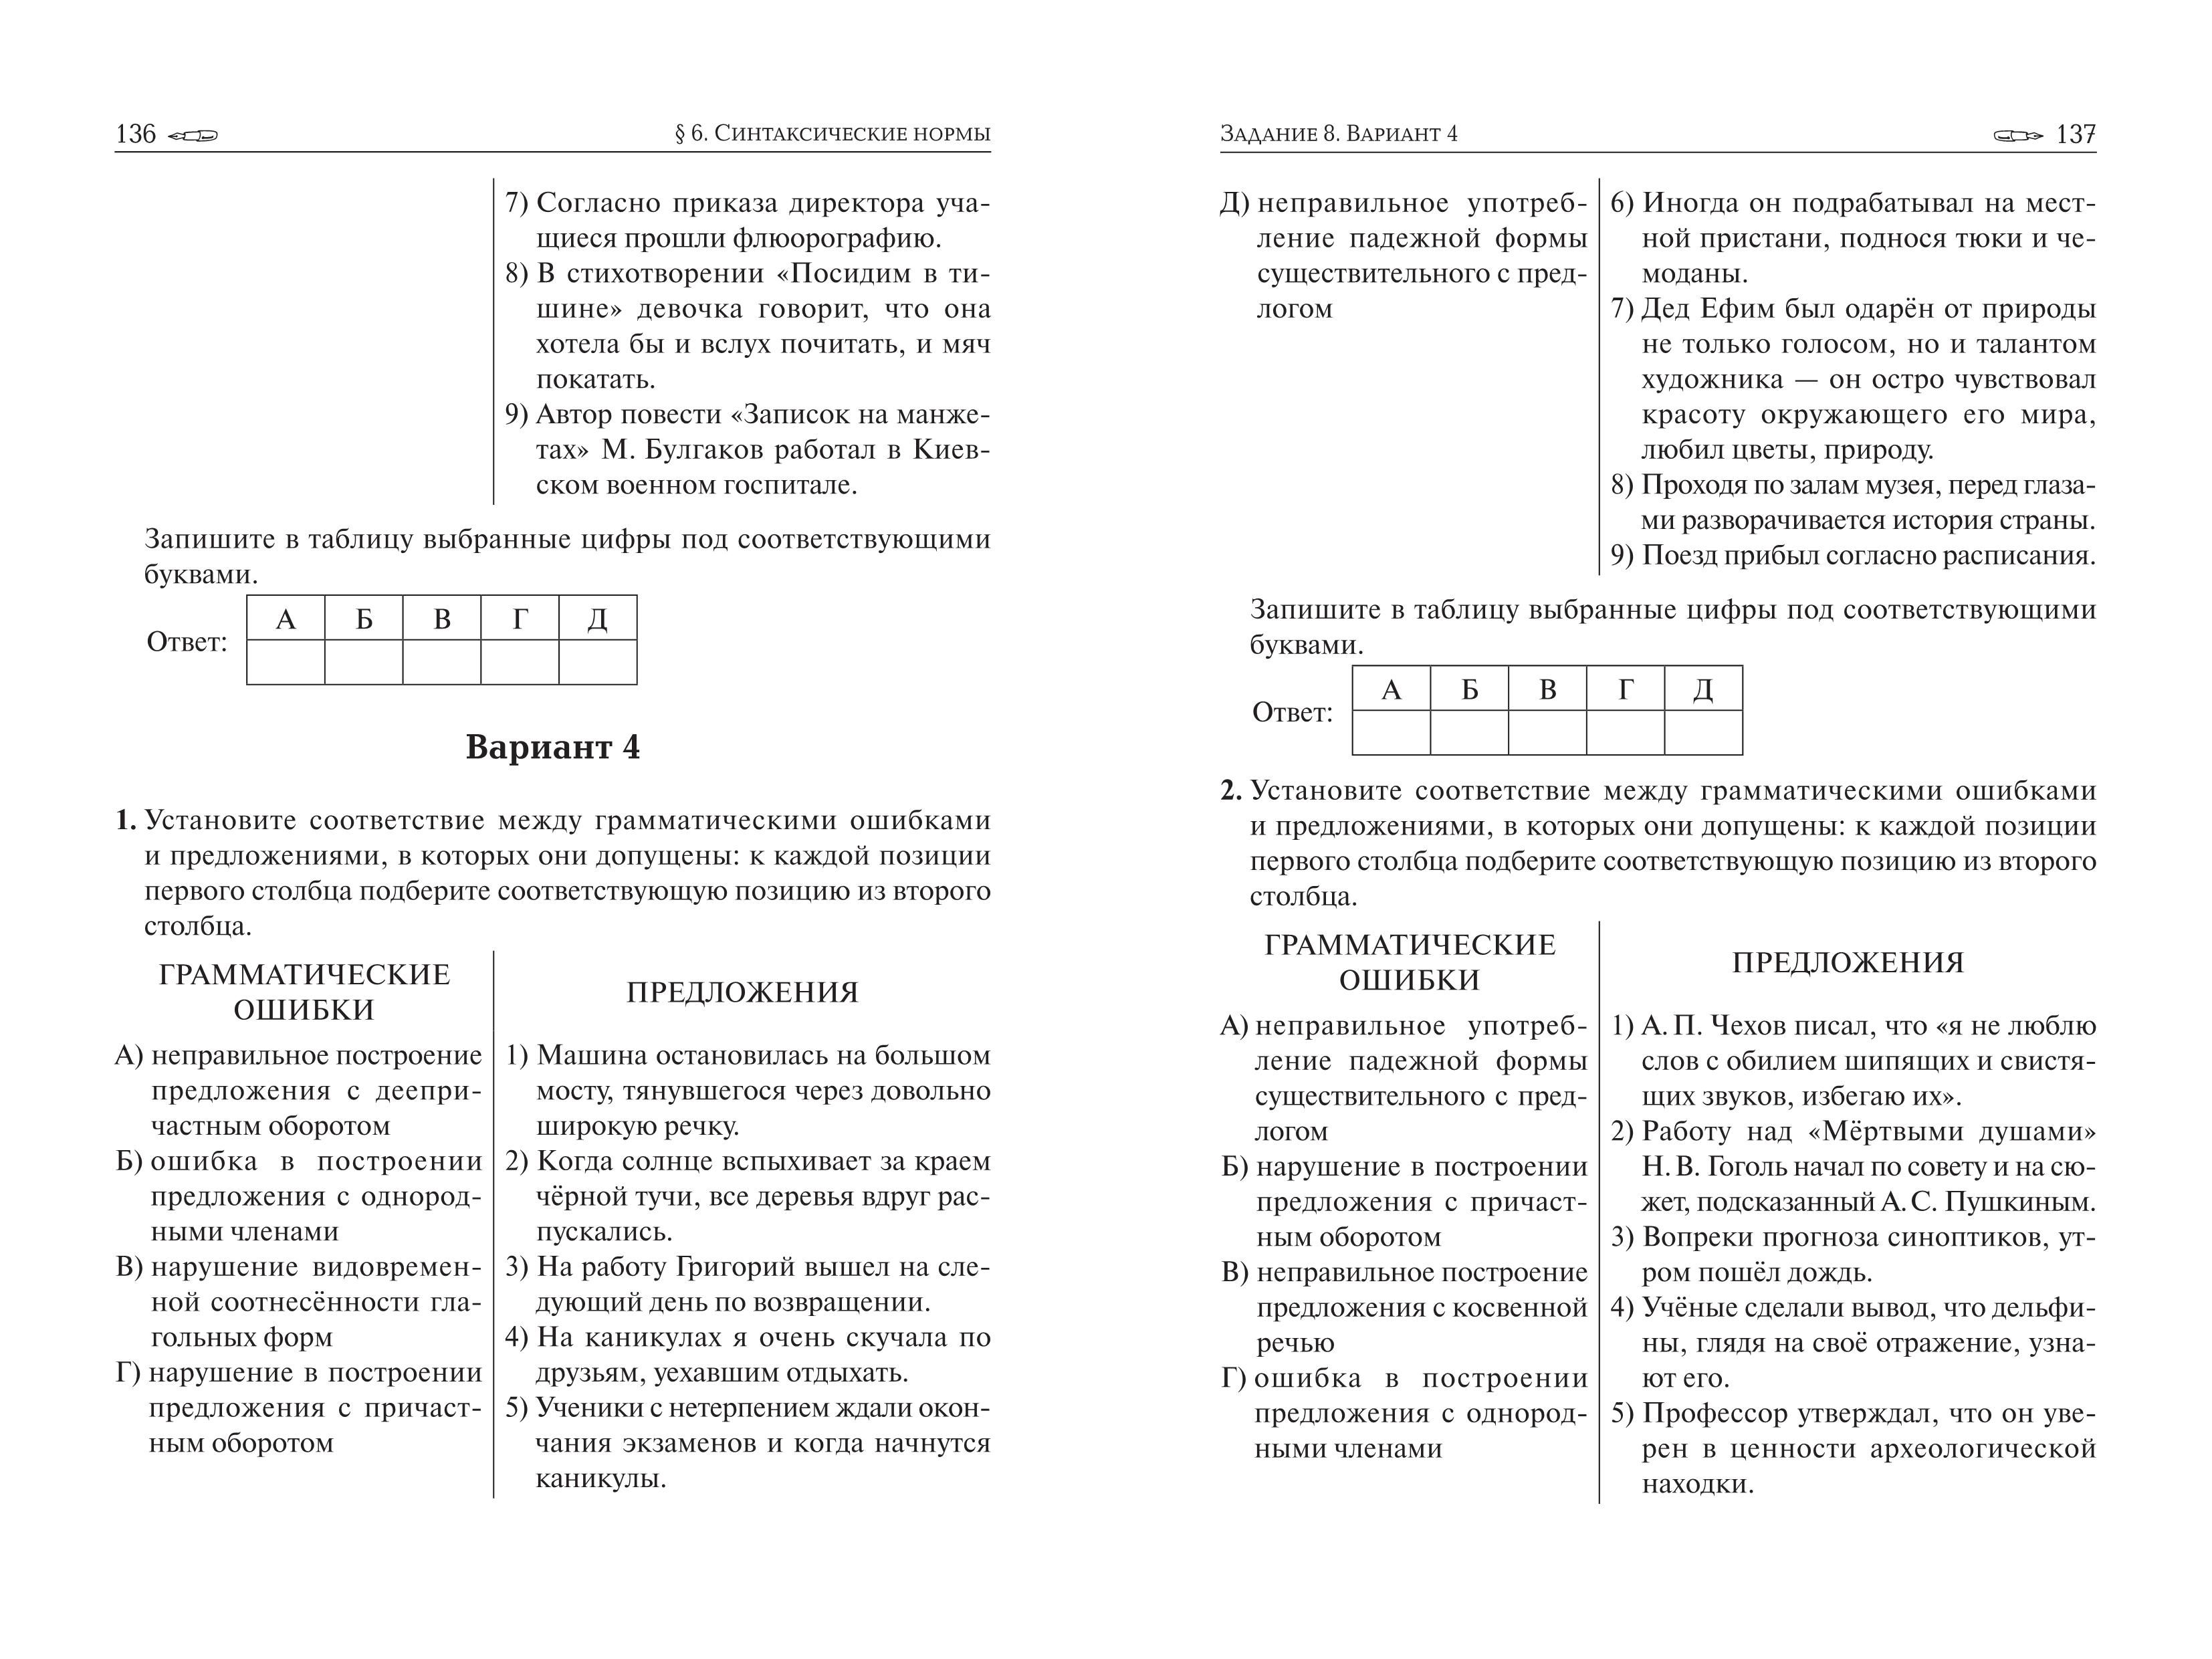 Русский язык. ЕГЭ-2020. Тематический тренинг